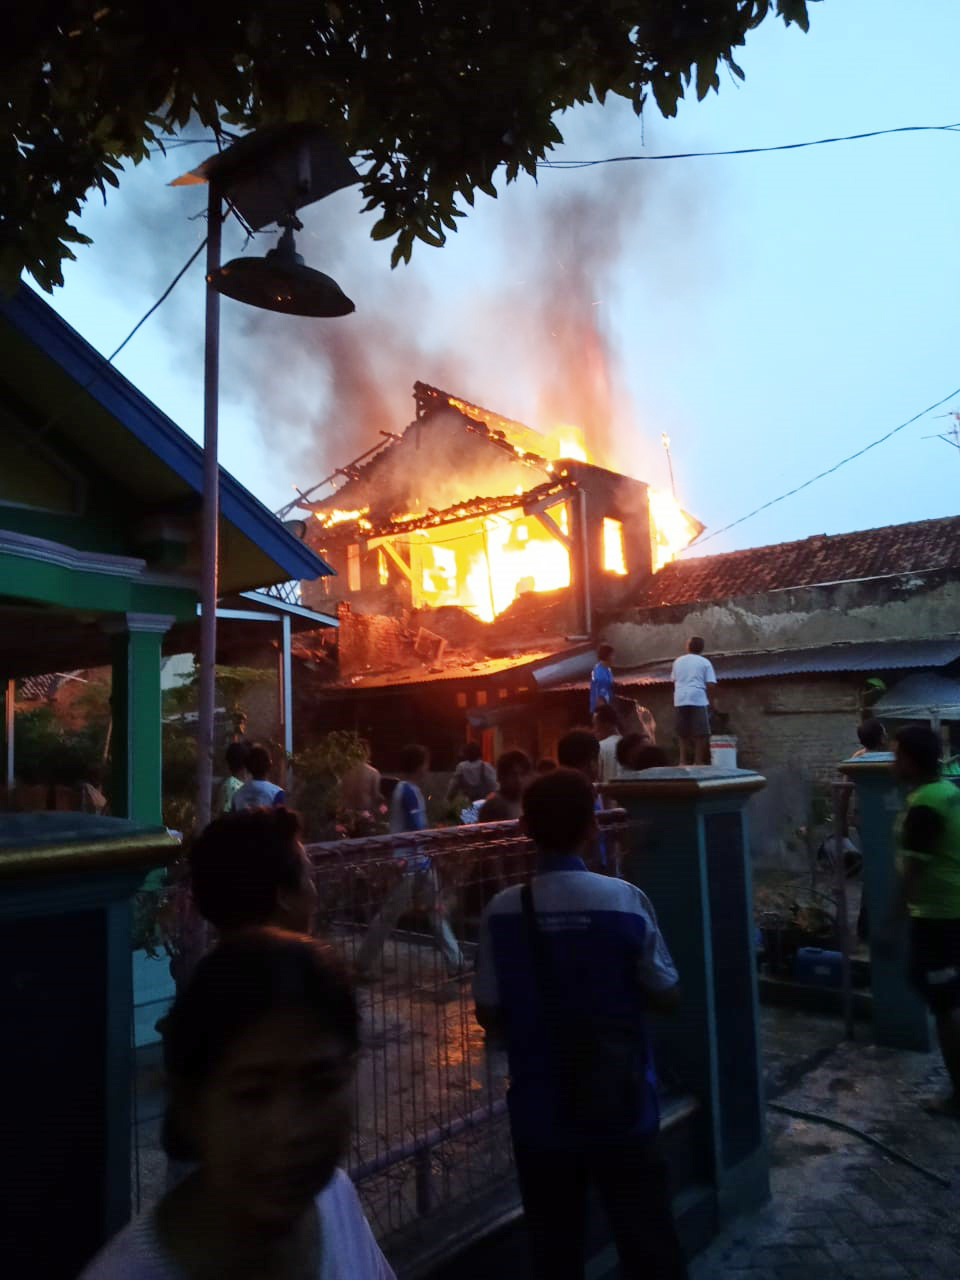 Rumah Dua Lantai Ludes Dilalap Api saat Pemilik Bukber di Luar